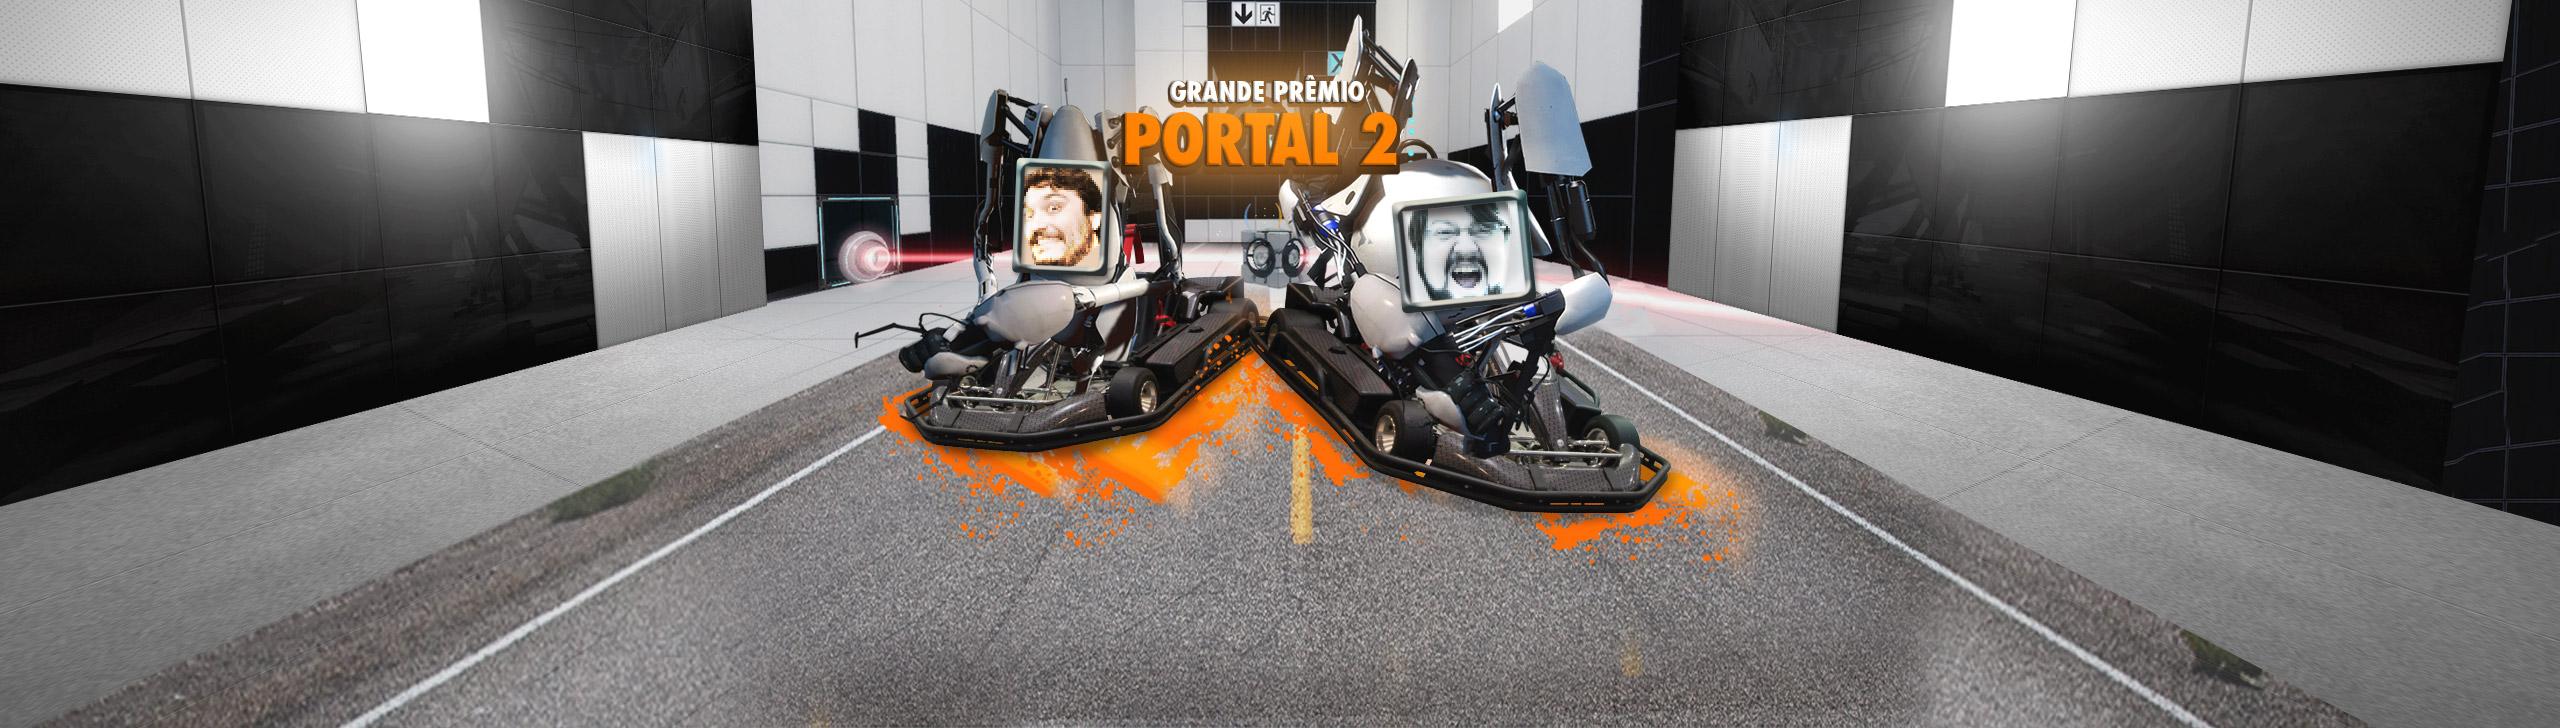 Portal 2 - Grande Prêmio Baba Laranja